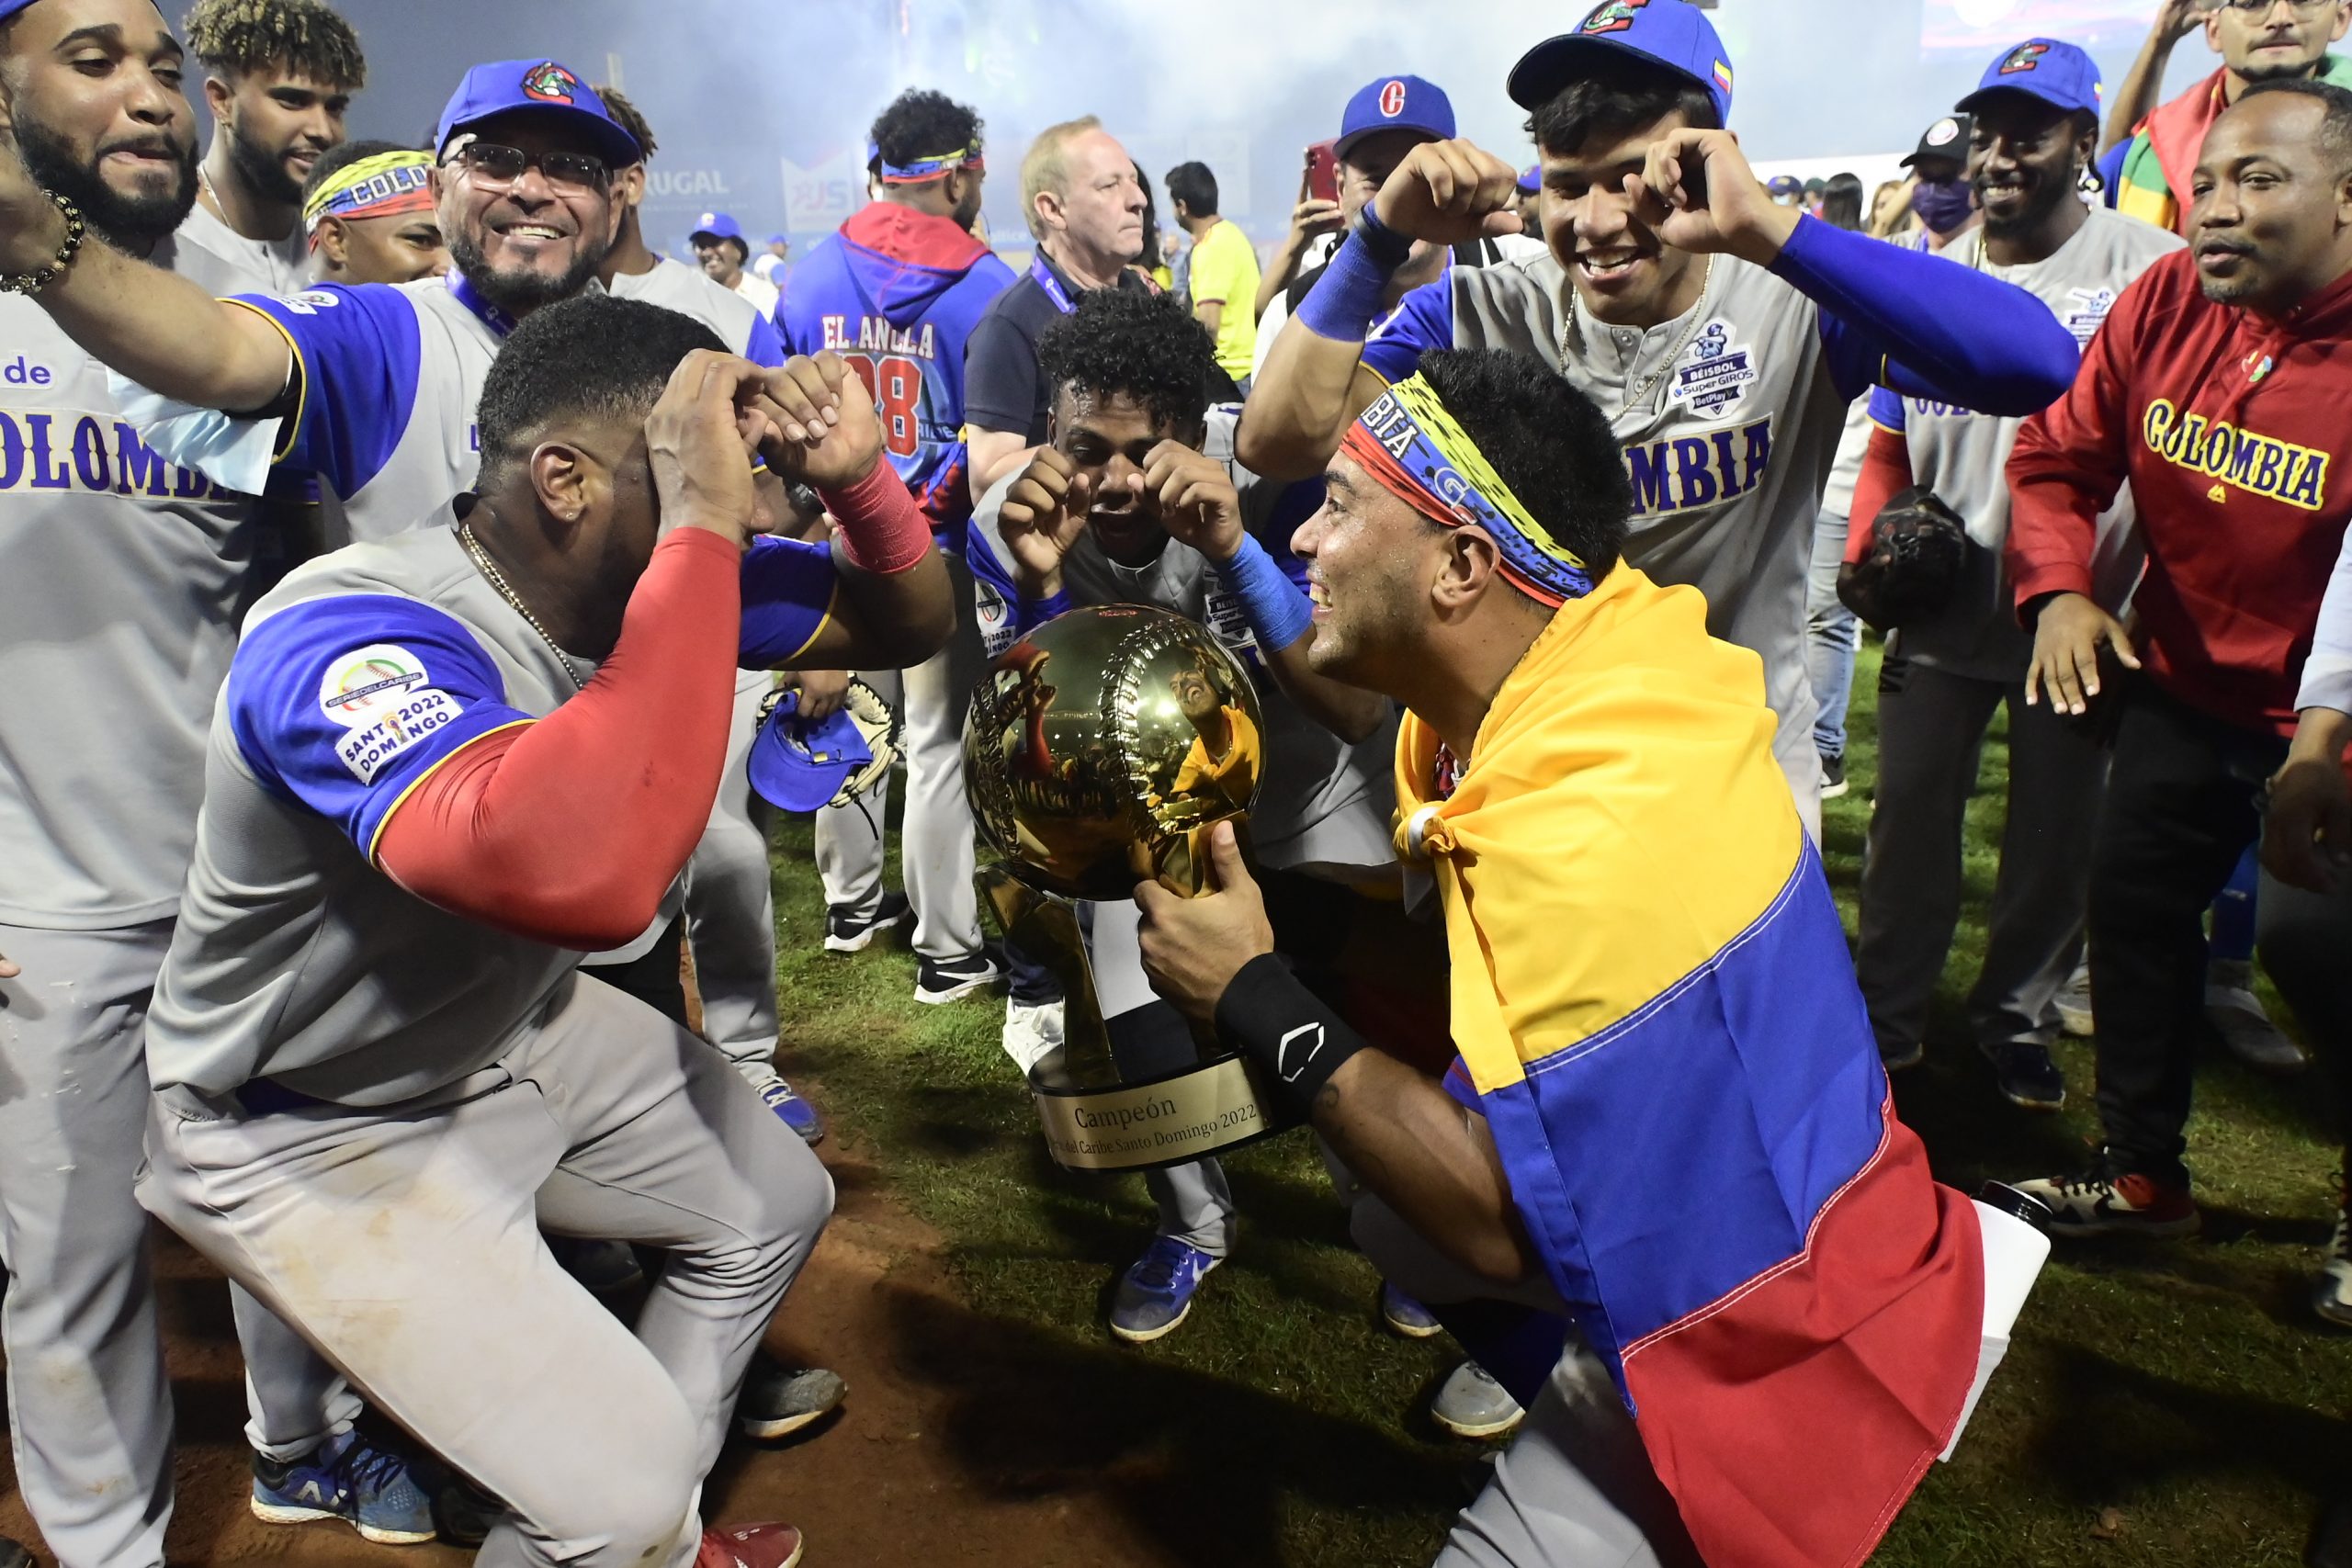 Colombia conquista su primer título de Serie del Caribe